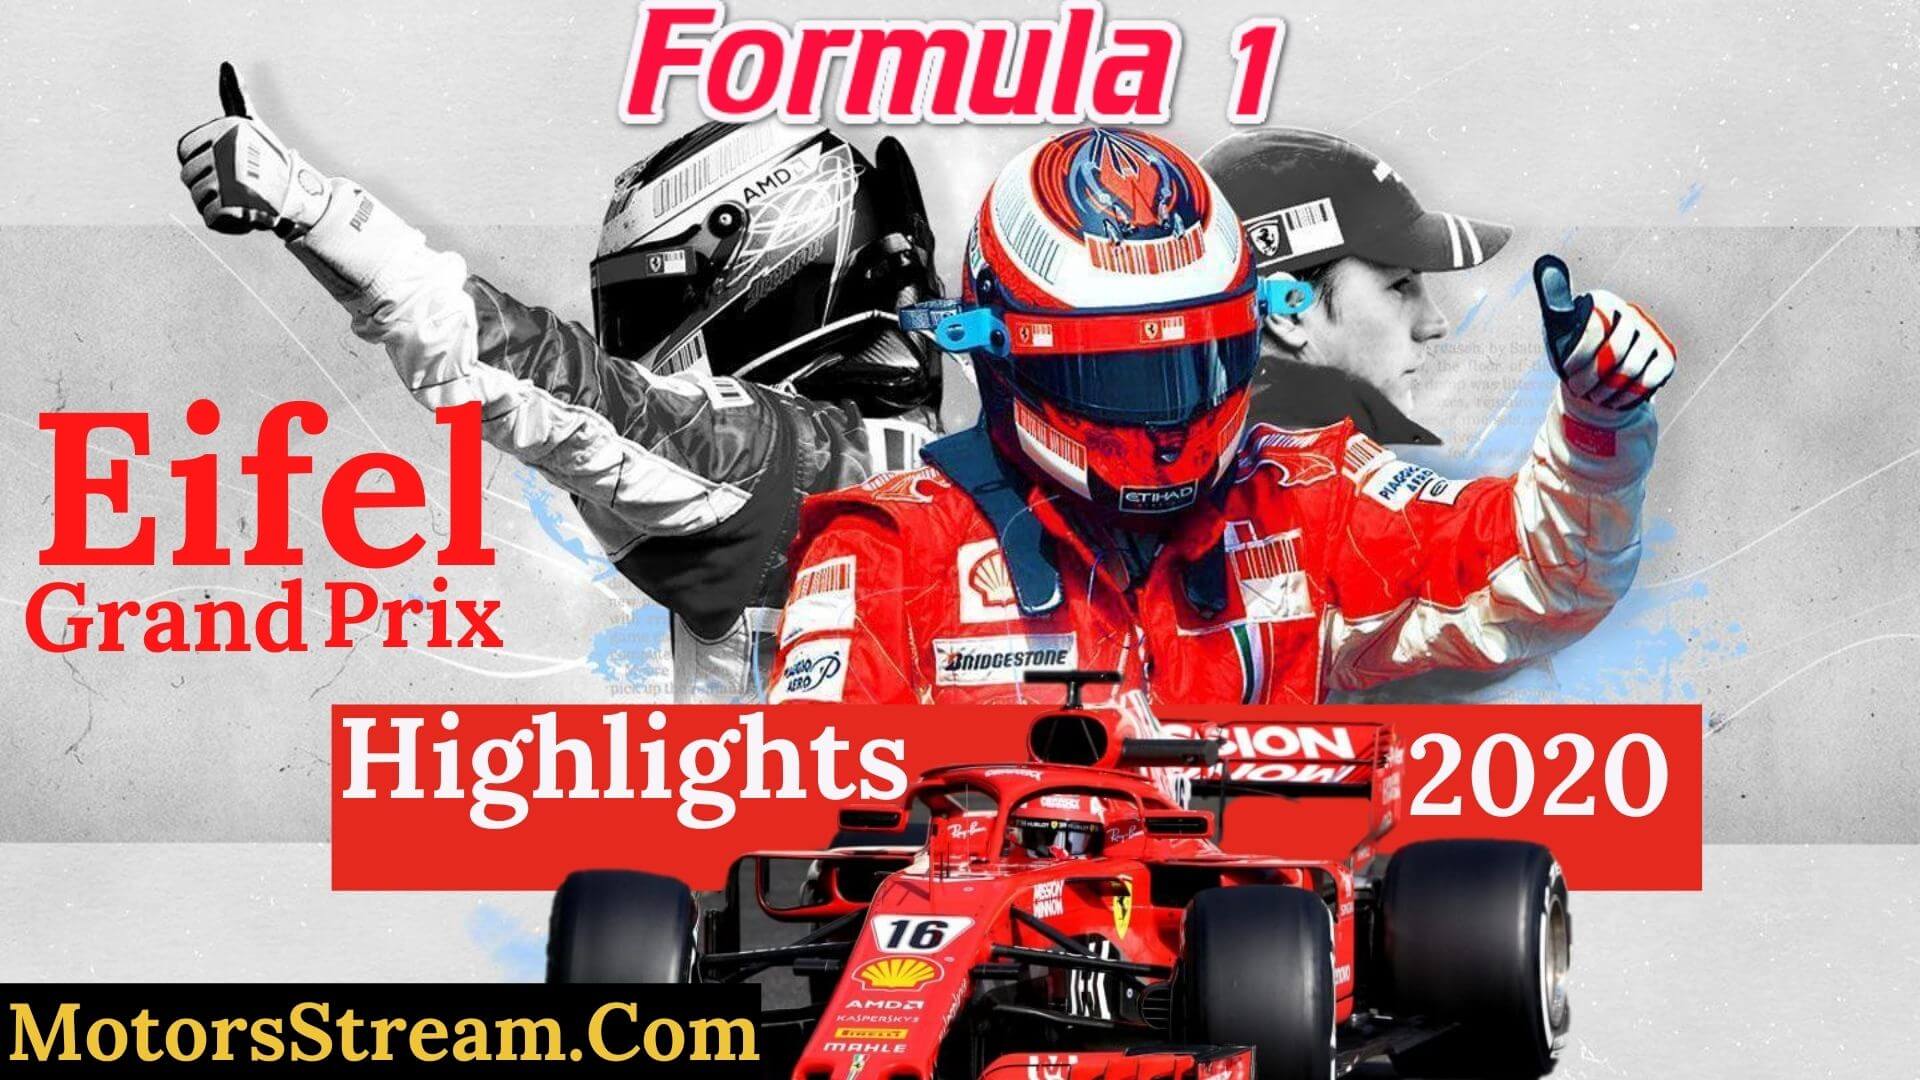 Eifel Grand Prix Final Race Highlights 2020 Formula 1